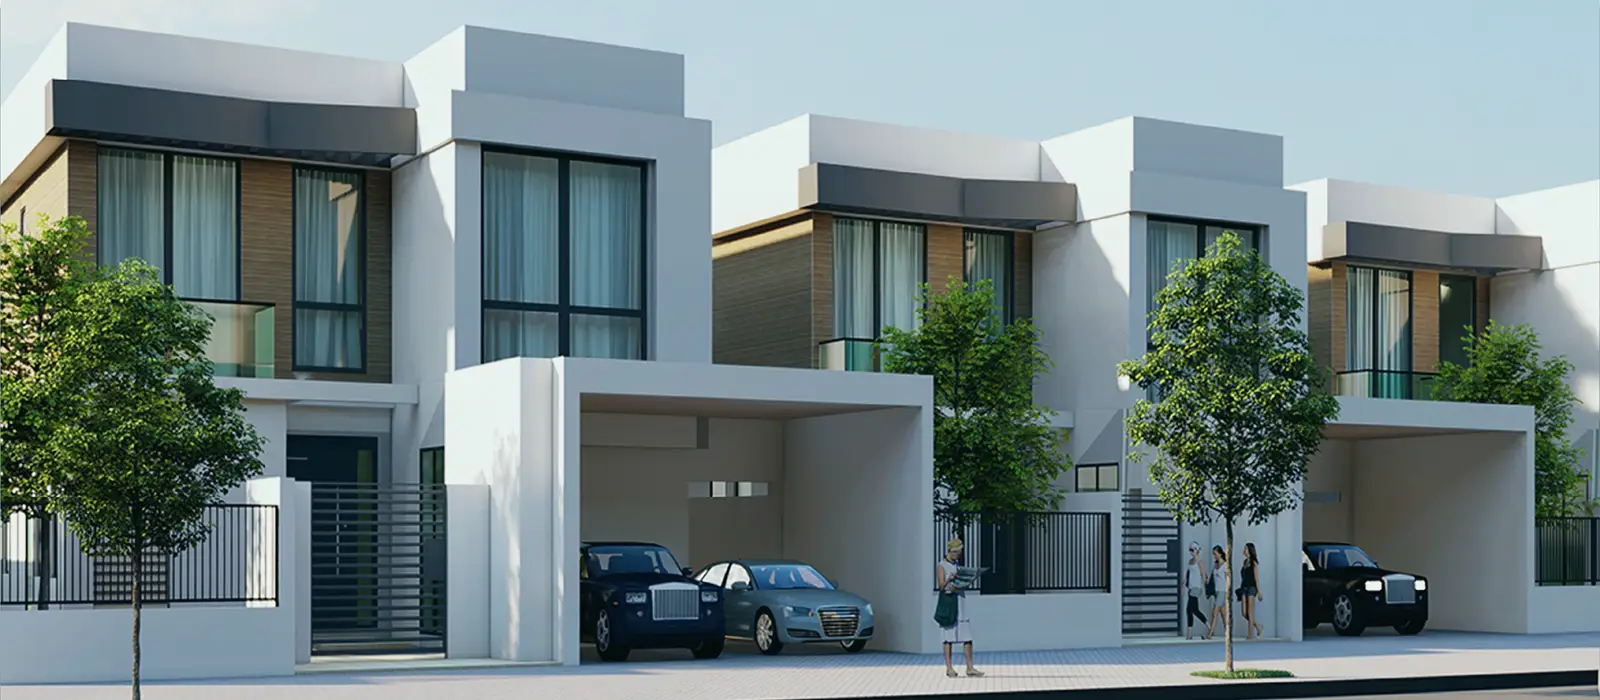 Premium Villas at Marbella Villas Phase 2